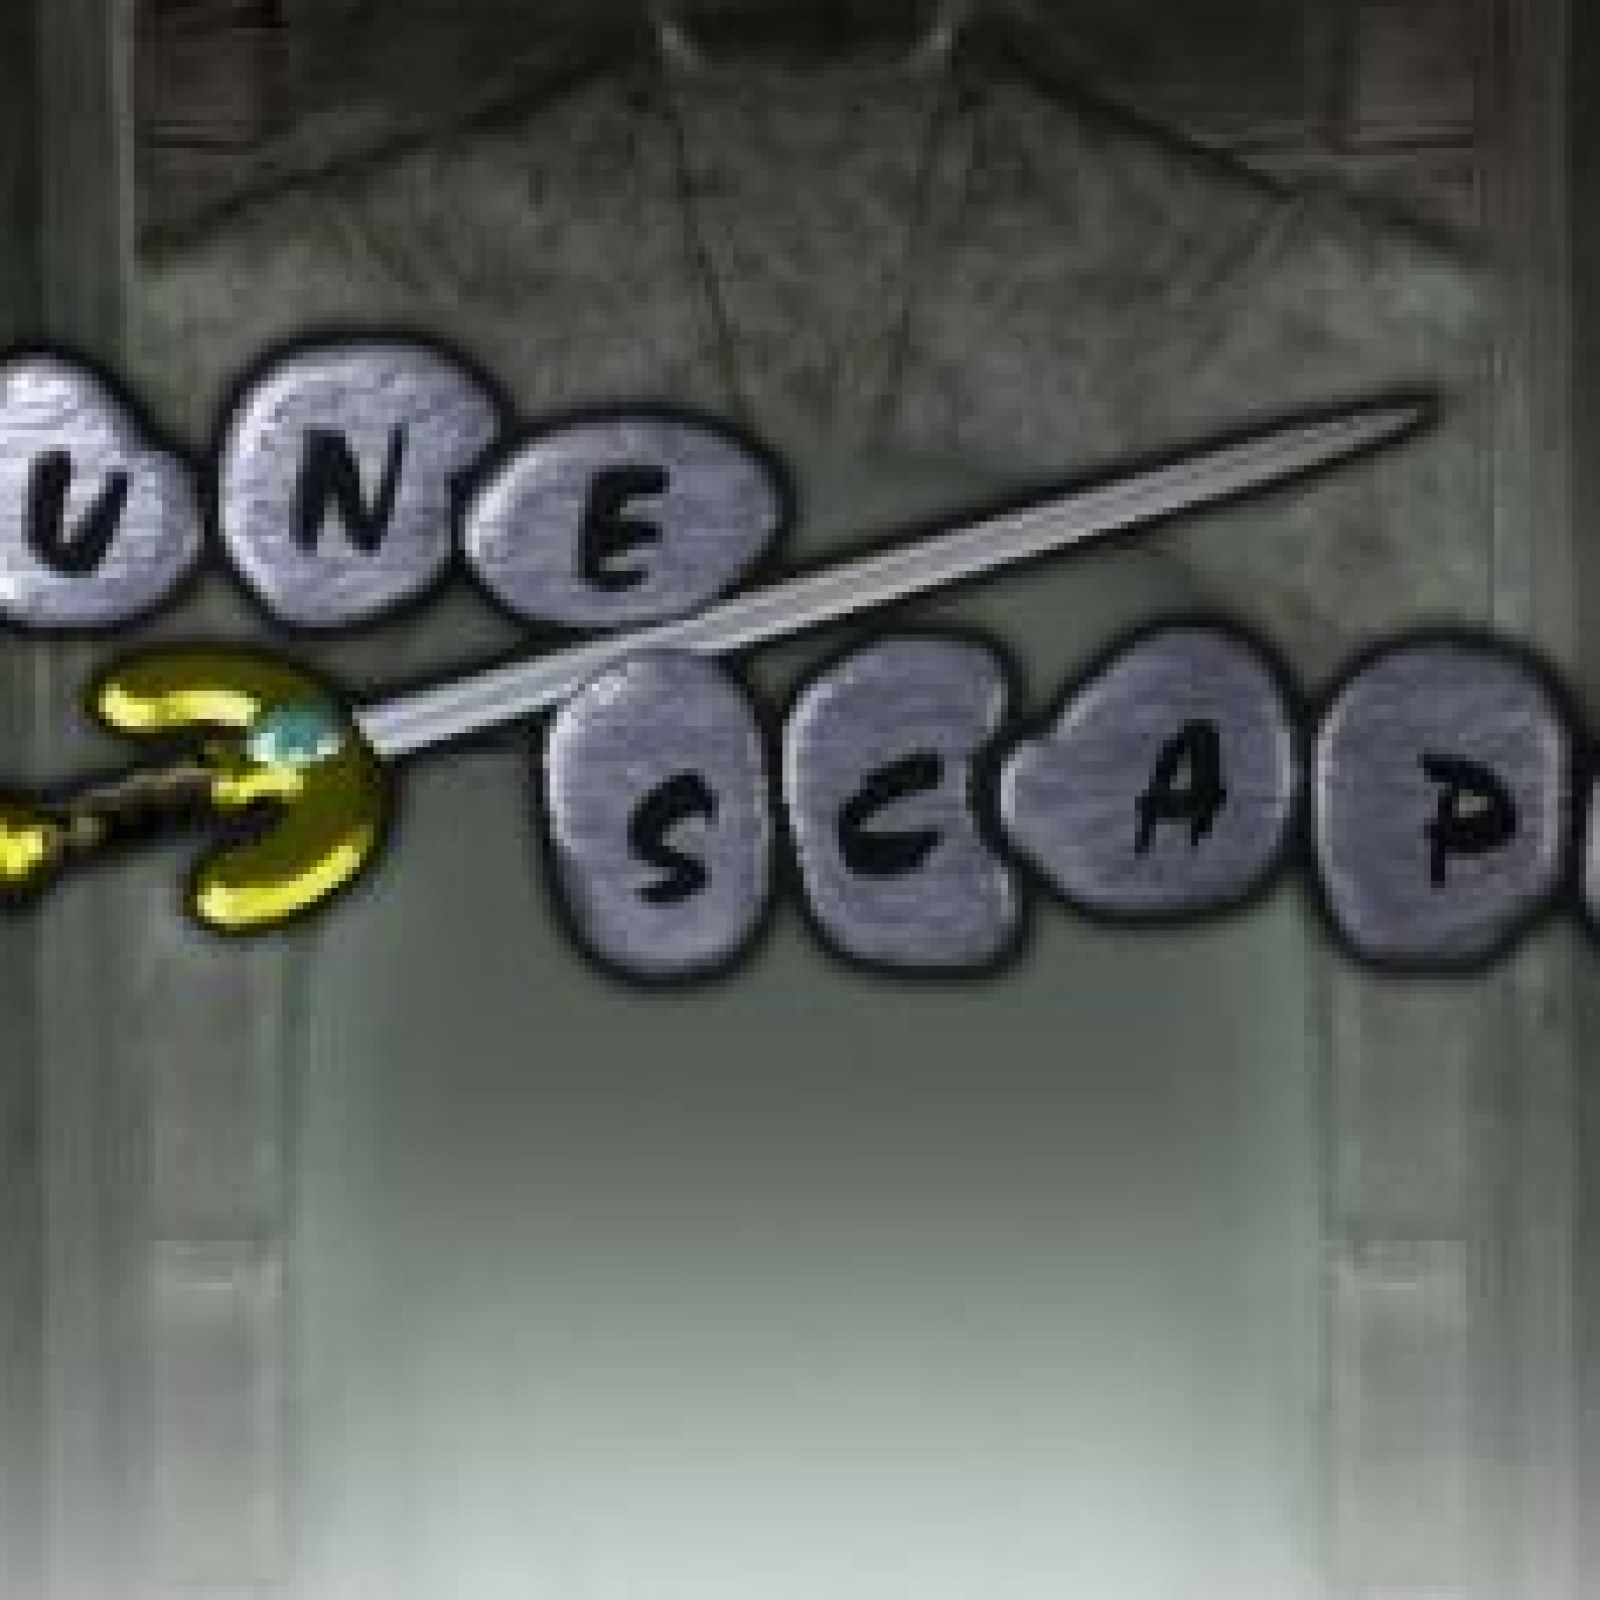 Beta fechado do RuneScape para iOS - Notícias - RuneScape - RuneScape